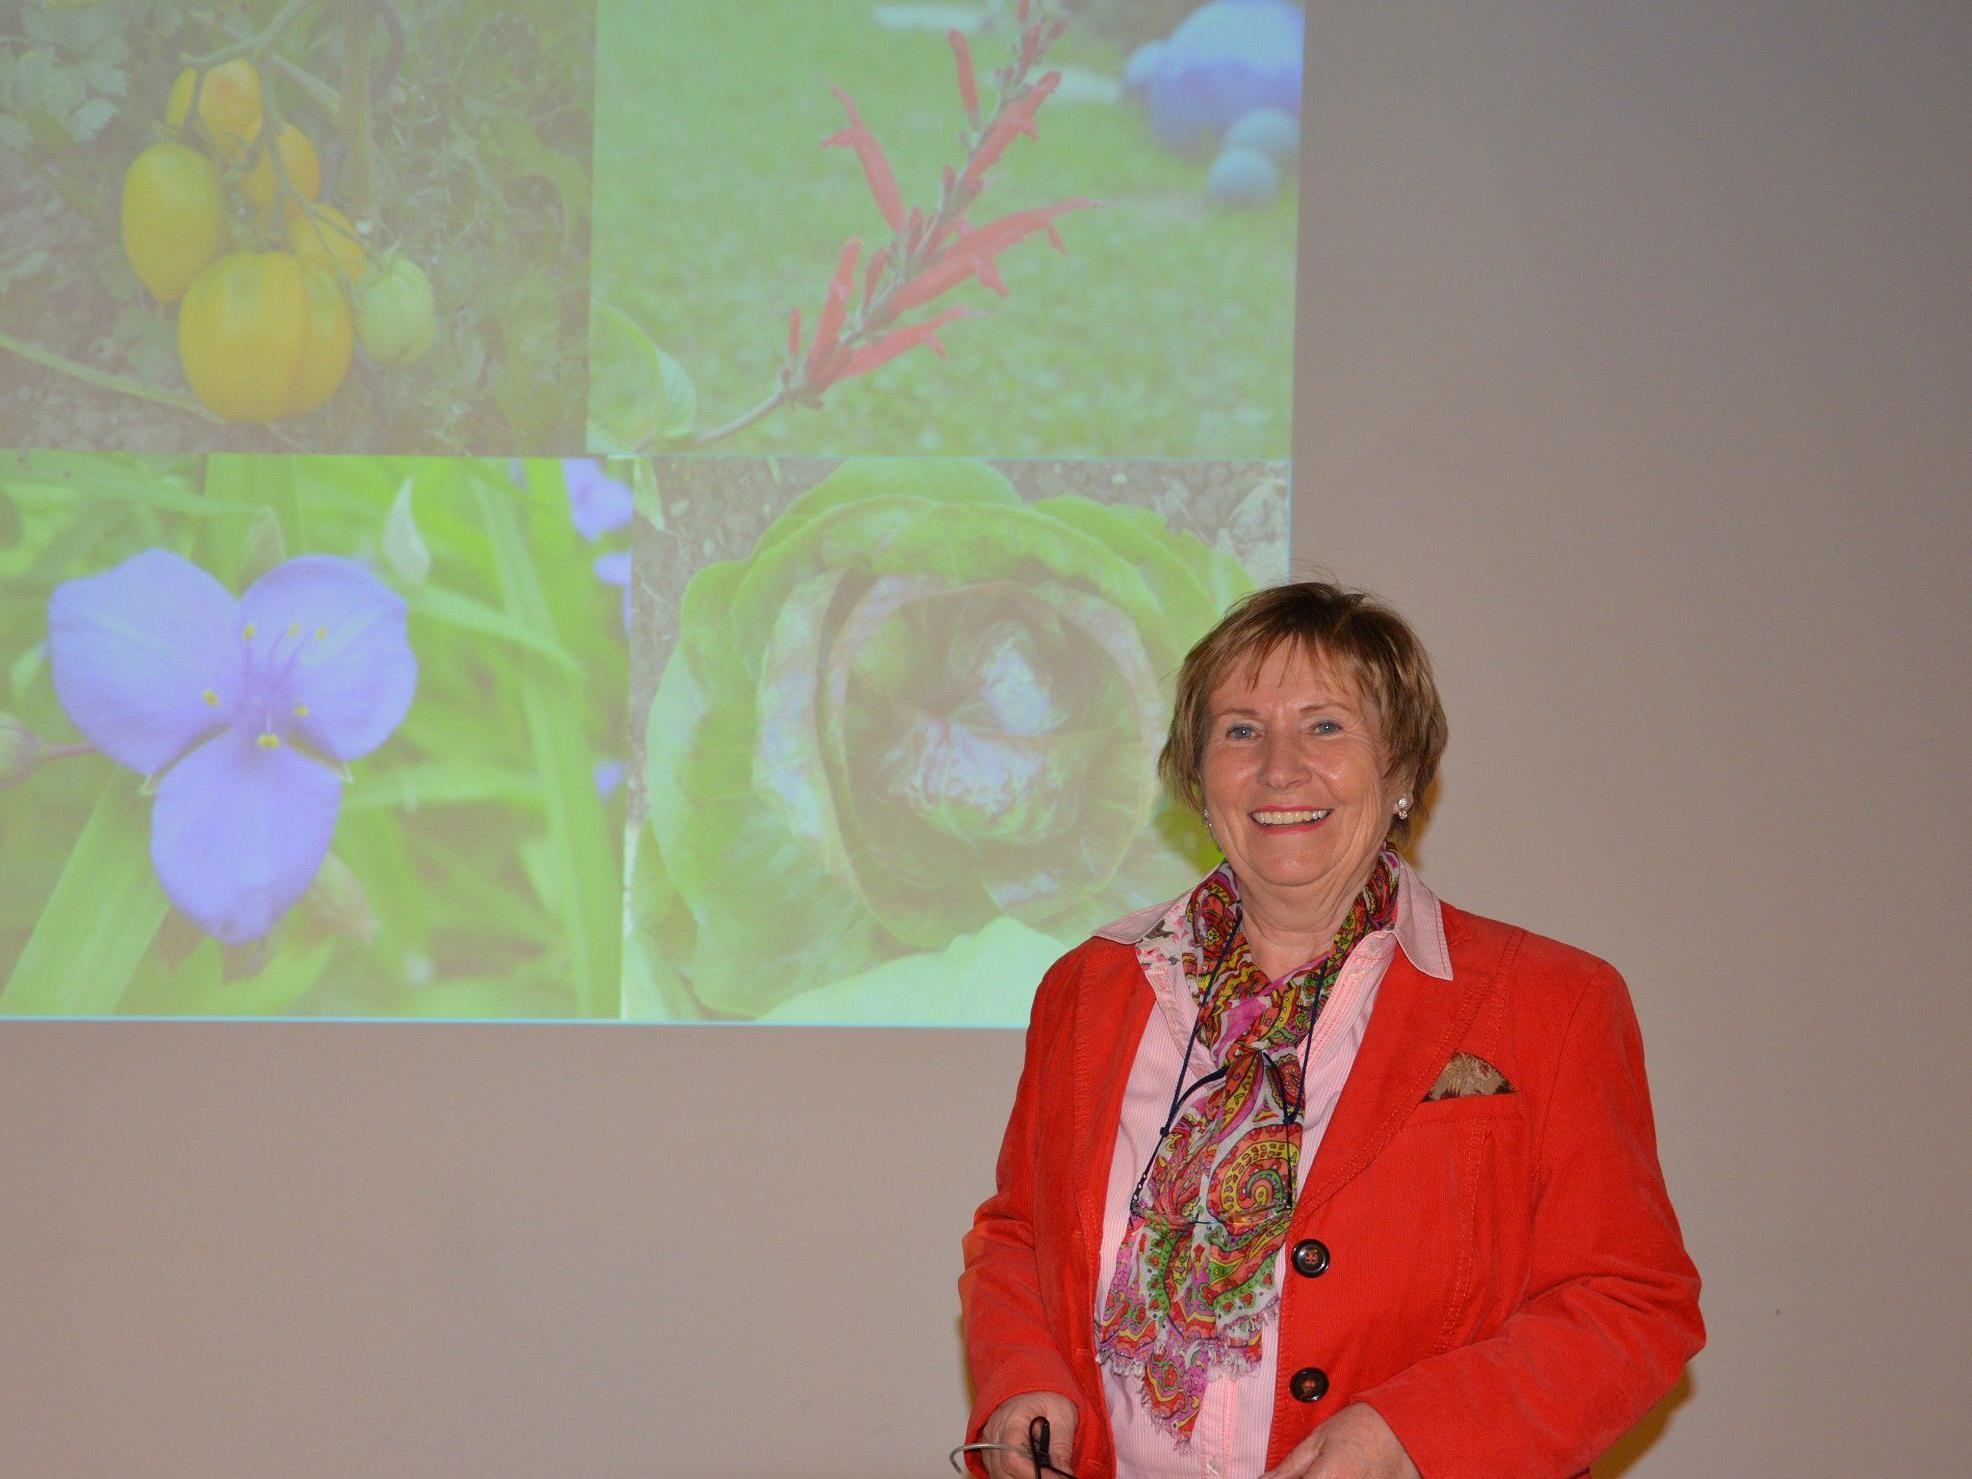 Buchautorin Christiane Maute aus Friedrichshafen hielt einen Vortrag über den homöopathischen Pflanzenschutz.